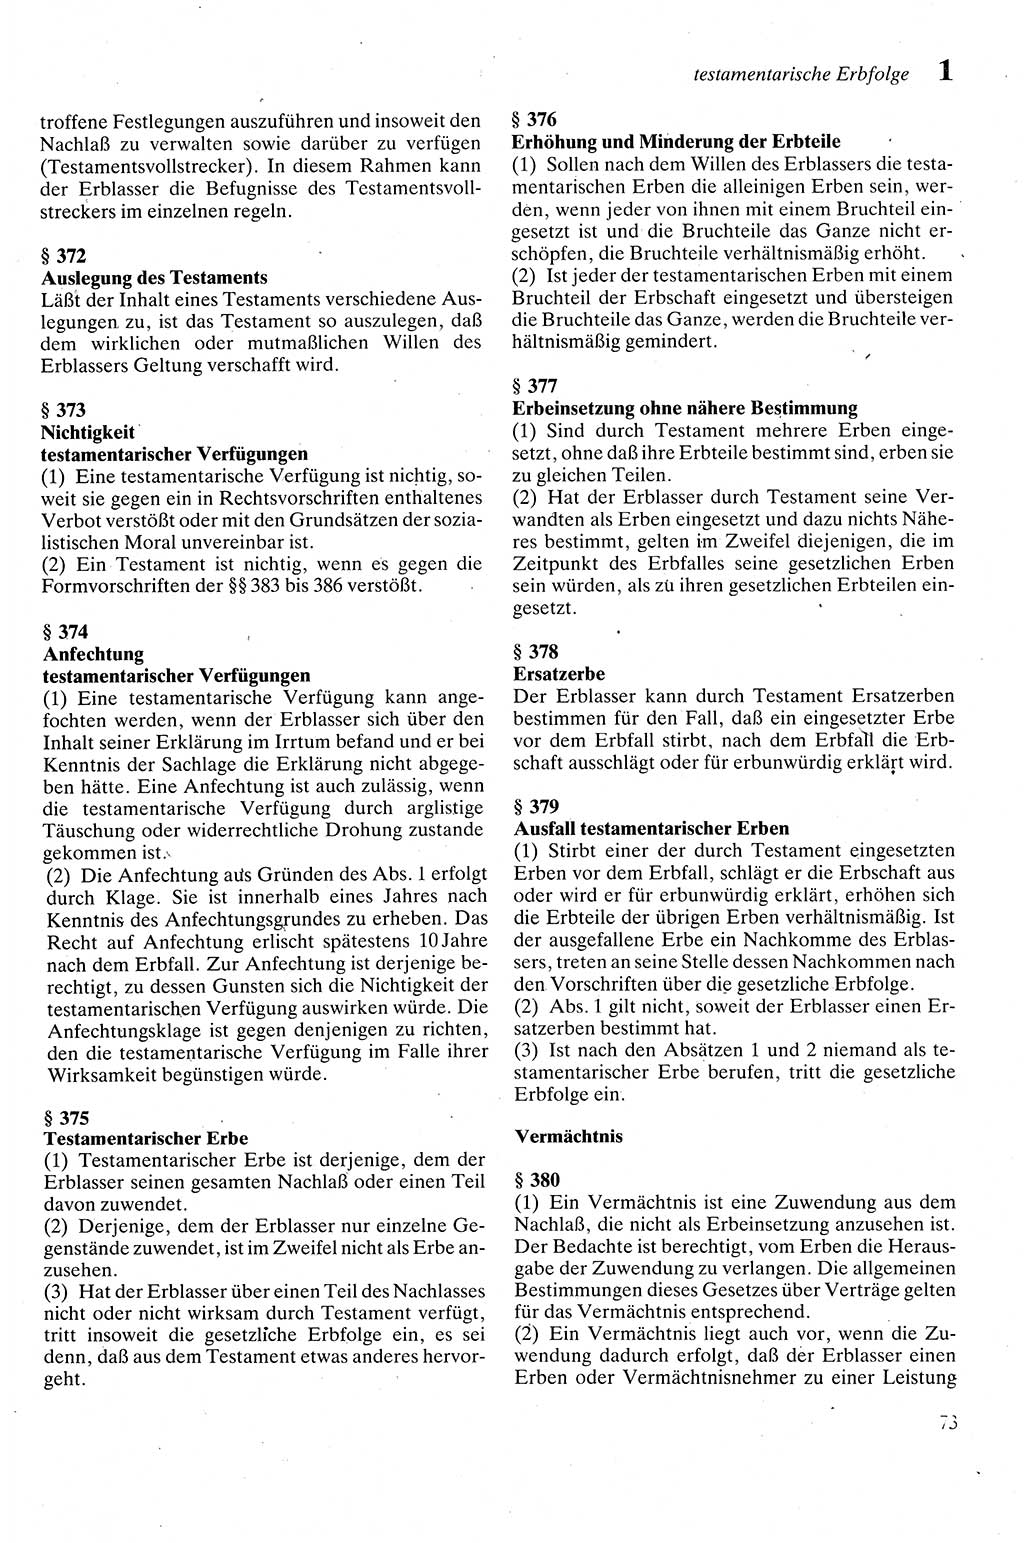 Zivilgesetzbuch (ZVG) sowie angrenzende Gesetze und Bestimmungen [Deutsche Demokratische Republik (DDR)] 1975, Seite 73 (ZGB Ges. Best. DDR 1975, S. 73)